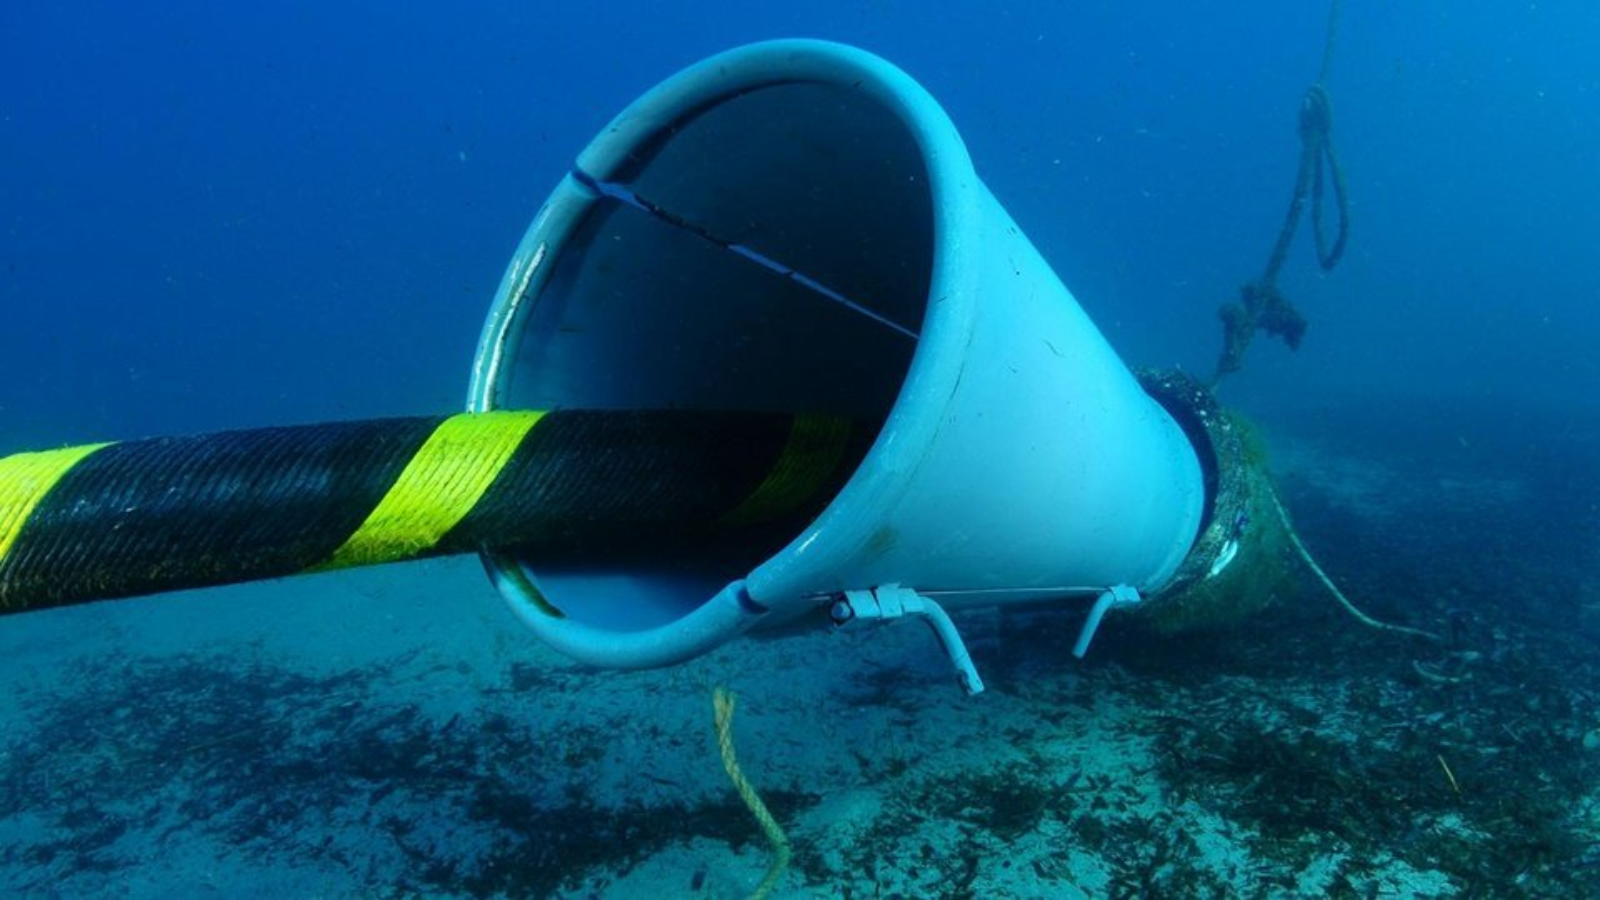 El proyecto desarrollado junto con Red Eléctrica y Akselos, ha permitido la creación de un software para anticipar daños en los cables submarinos con las garantías suficientes para aplicar la tecnología a dos casos de estudio reales